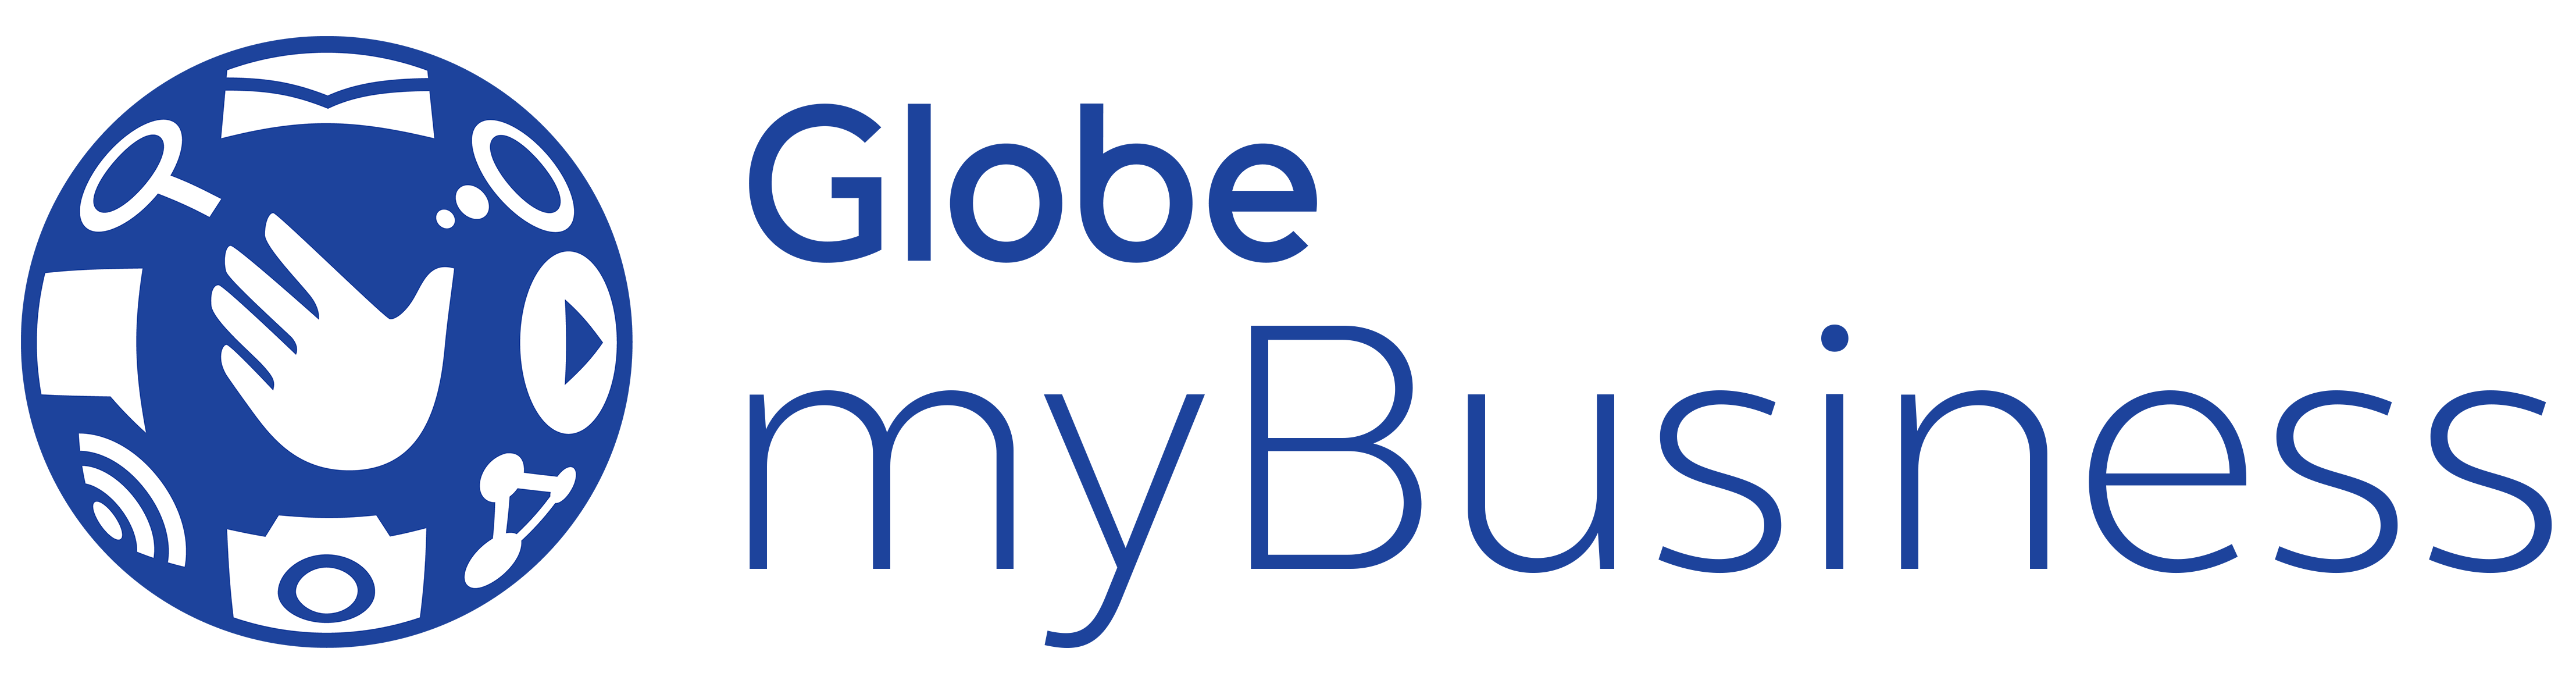 Globe Business Logo - Globe myBusiness